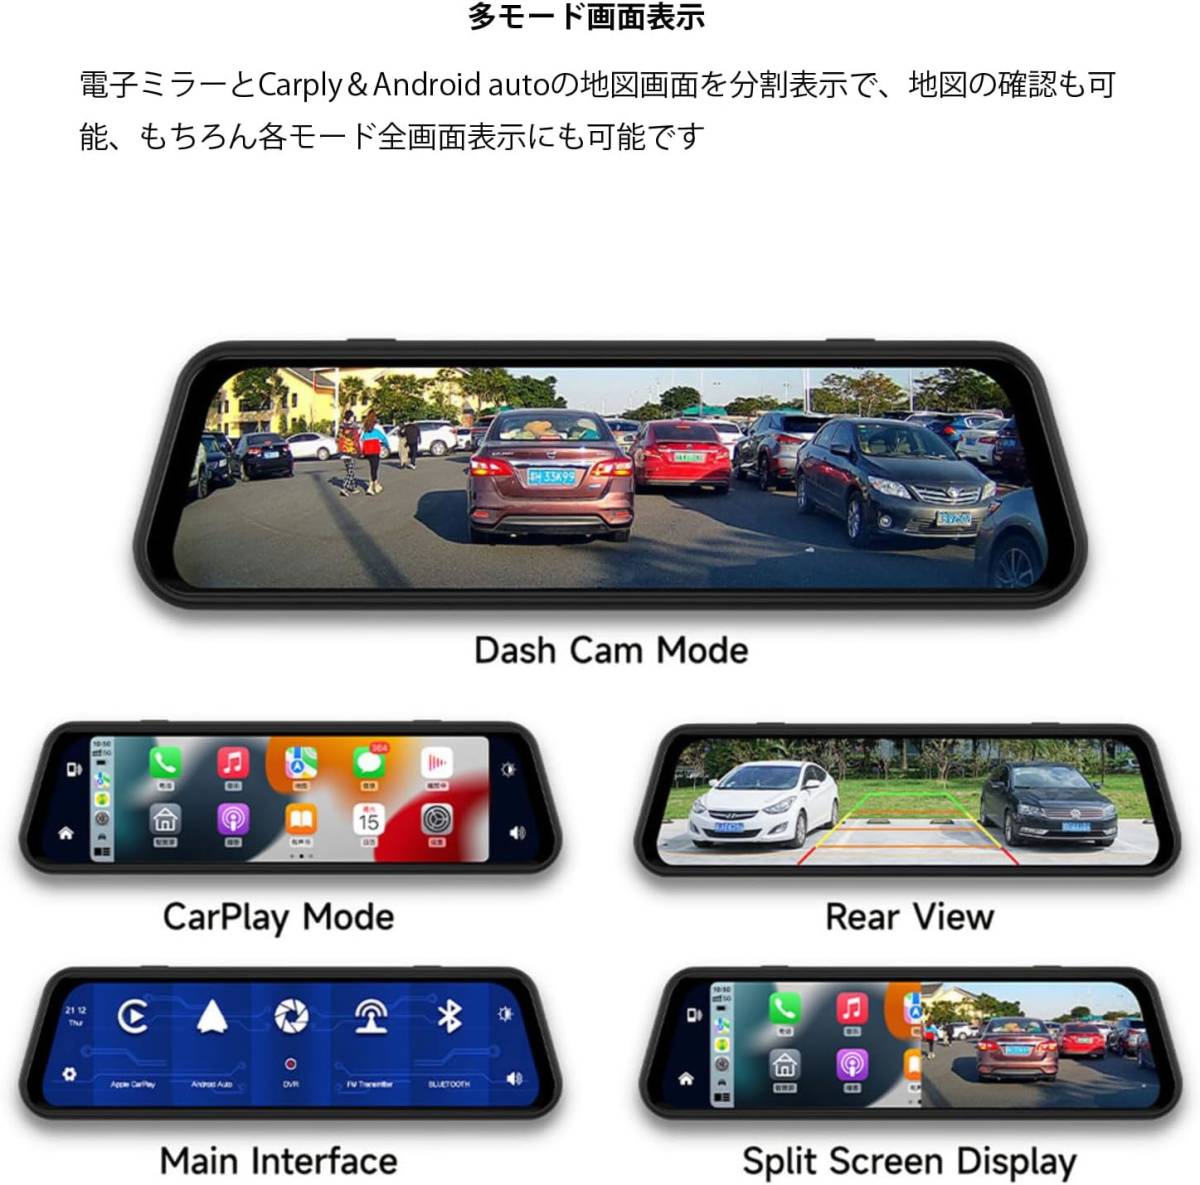  беспроводной Carplay/AndroidAuto соответствует тип зеркала регистратор пути (drive recorder) 10 дюймовый жидкокристаллический 2K качество изображения правая сторона камера specification Poe tab навигационная система функция парковка мониторинг 